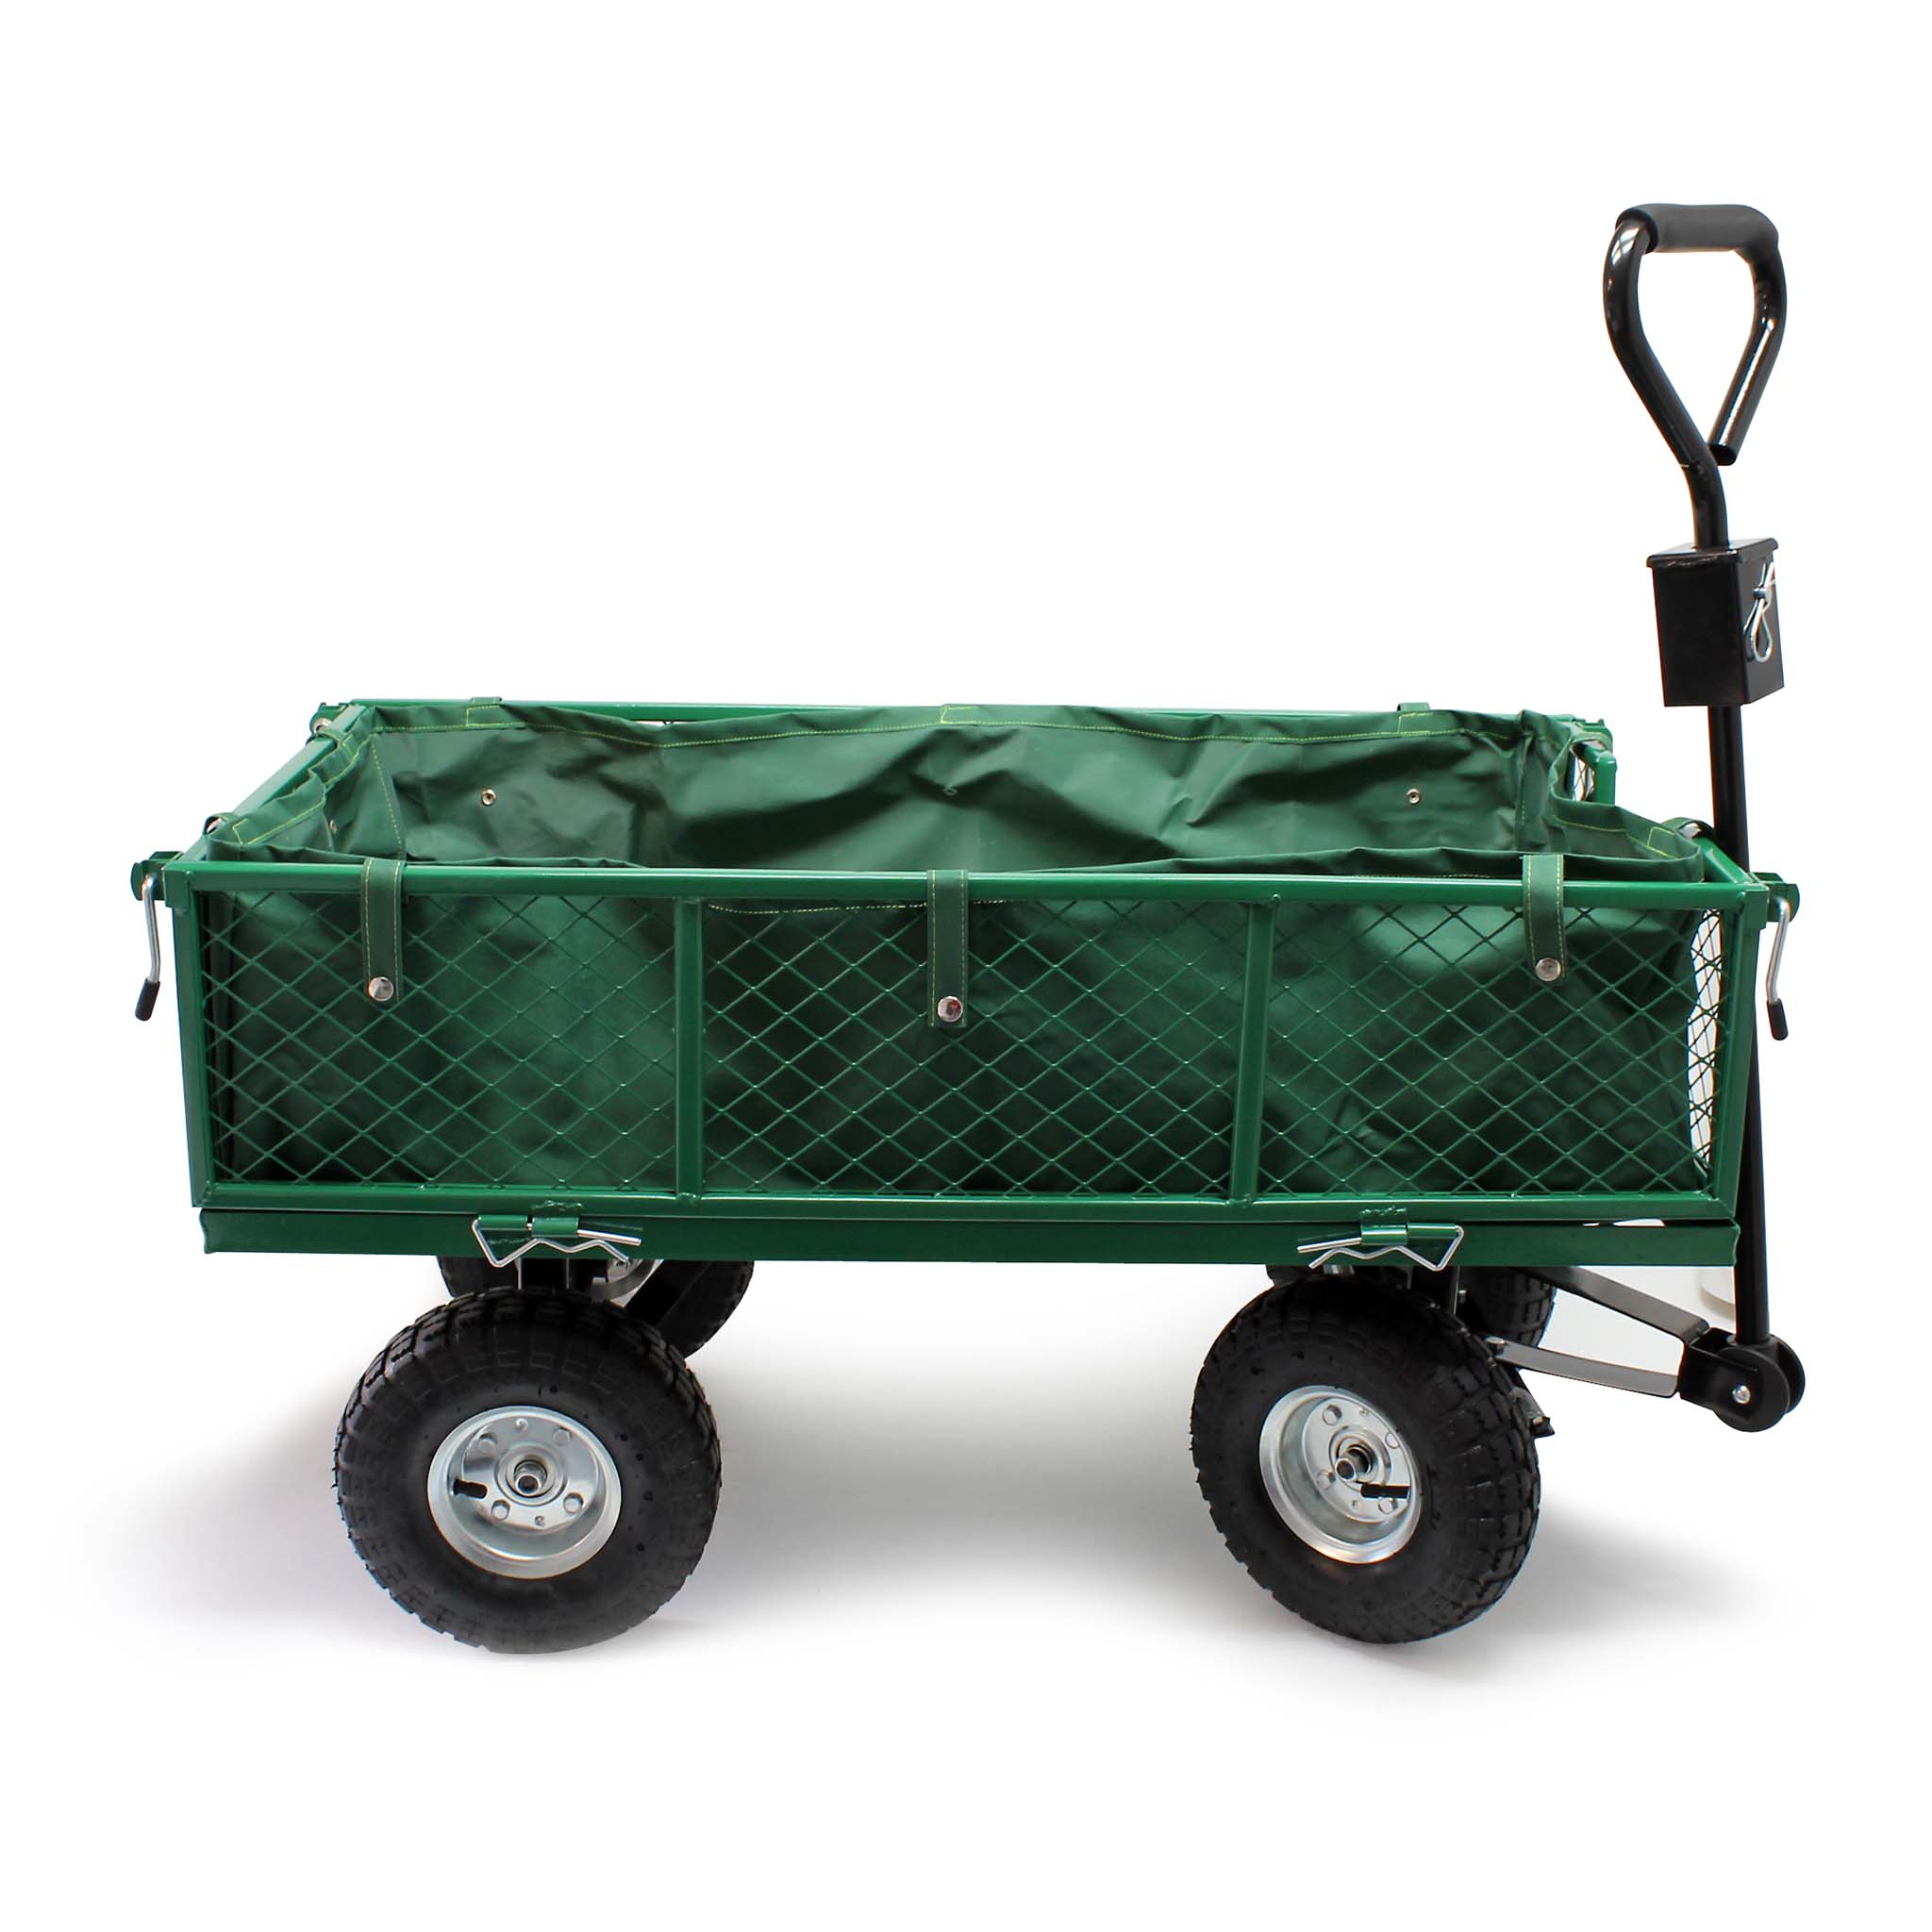 Chariot de jardin avec caisse plastique amovible